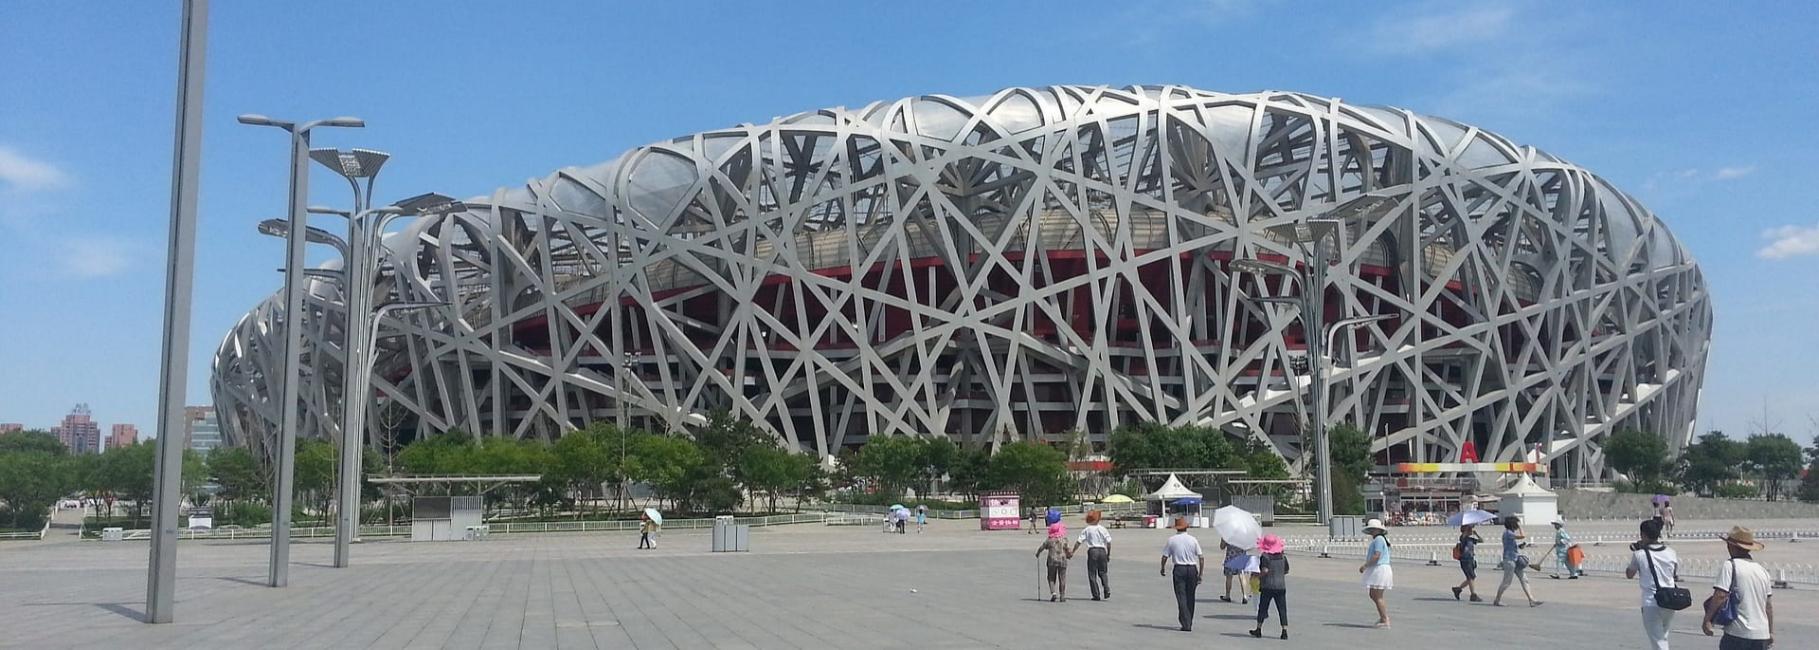 china sport trip header slk fe